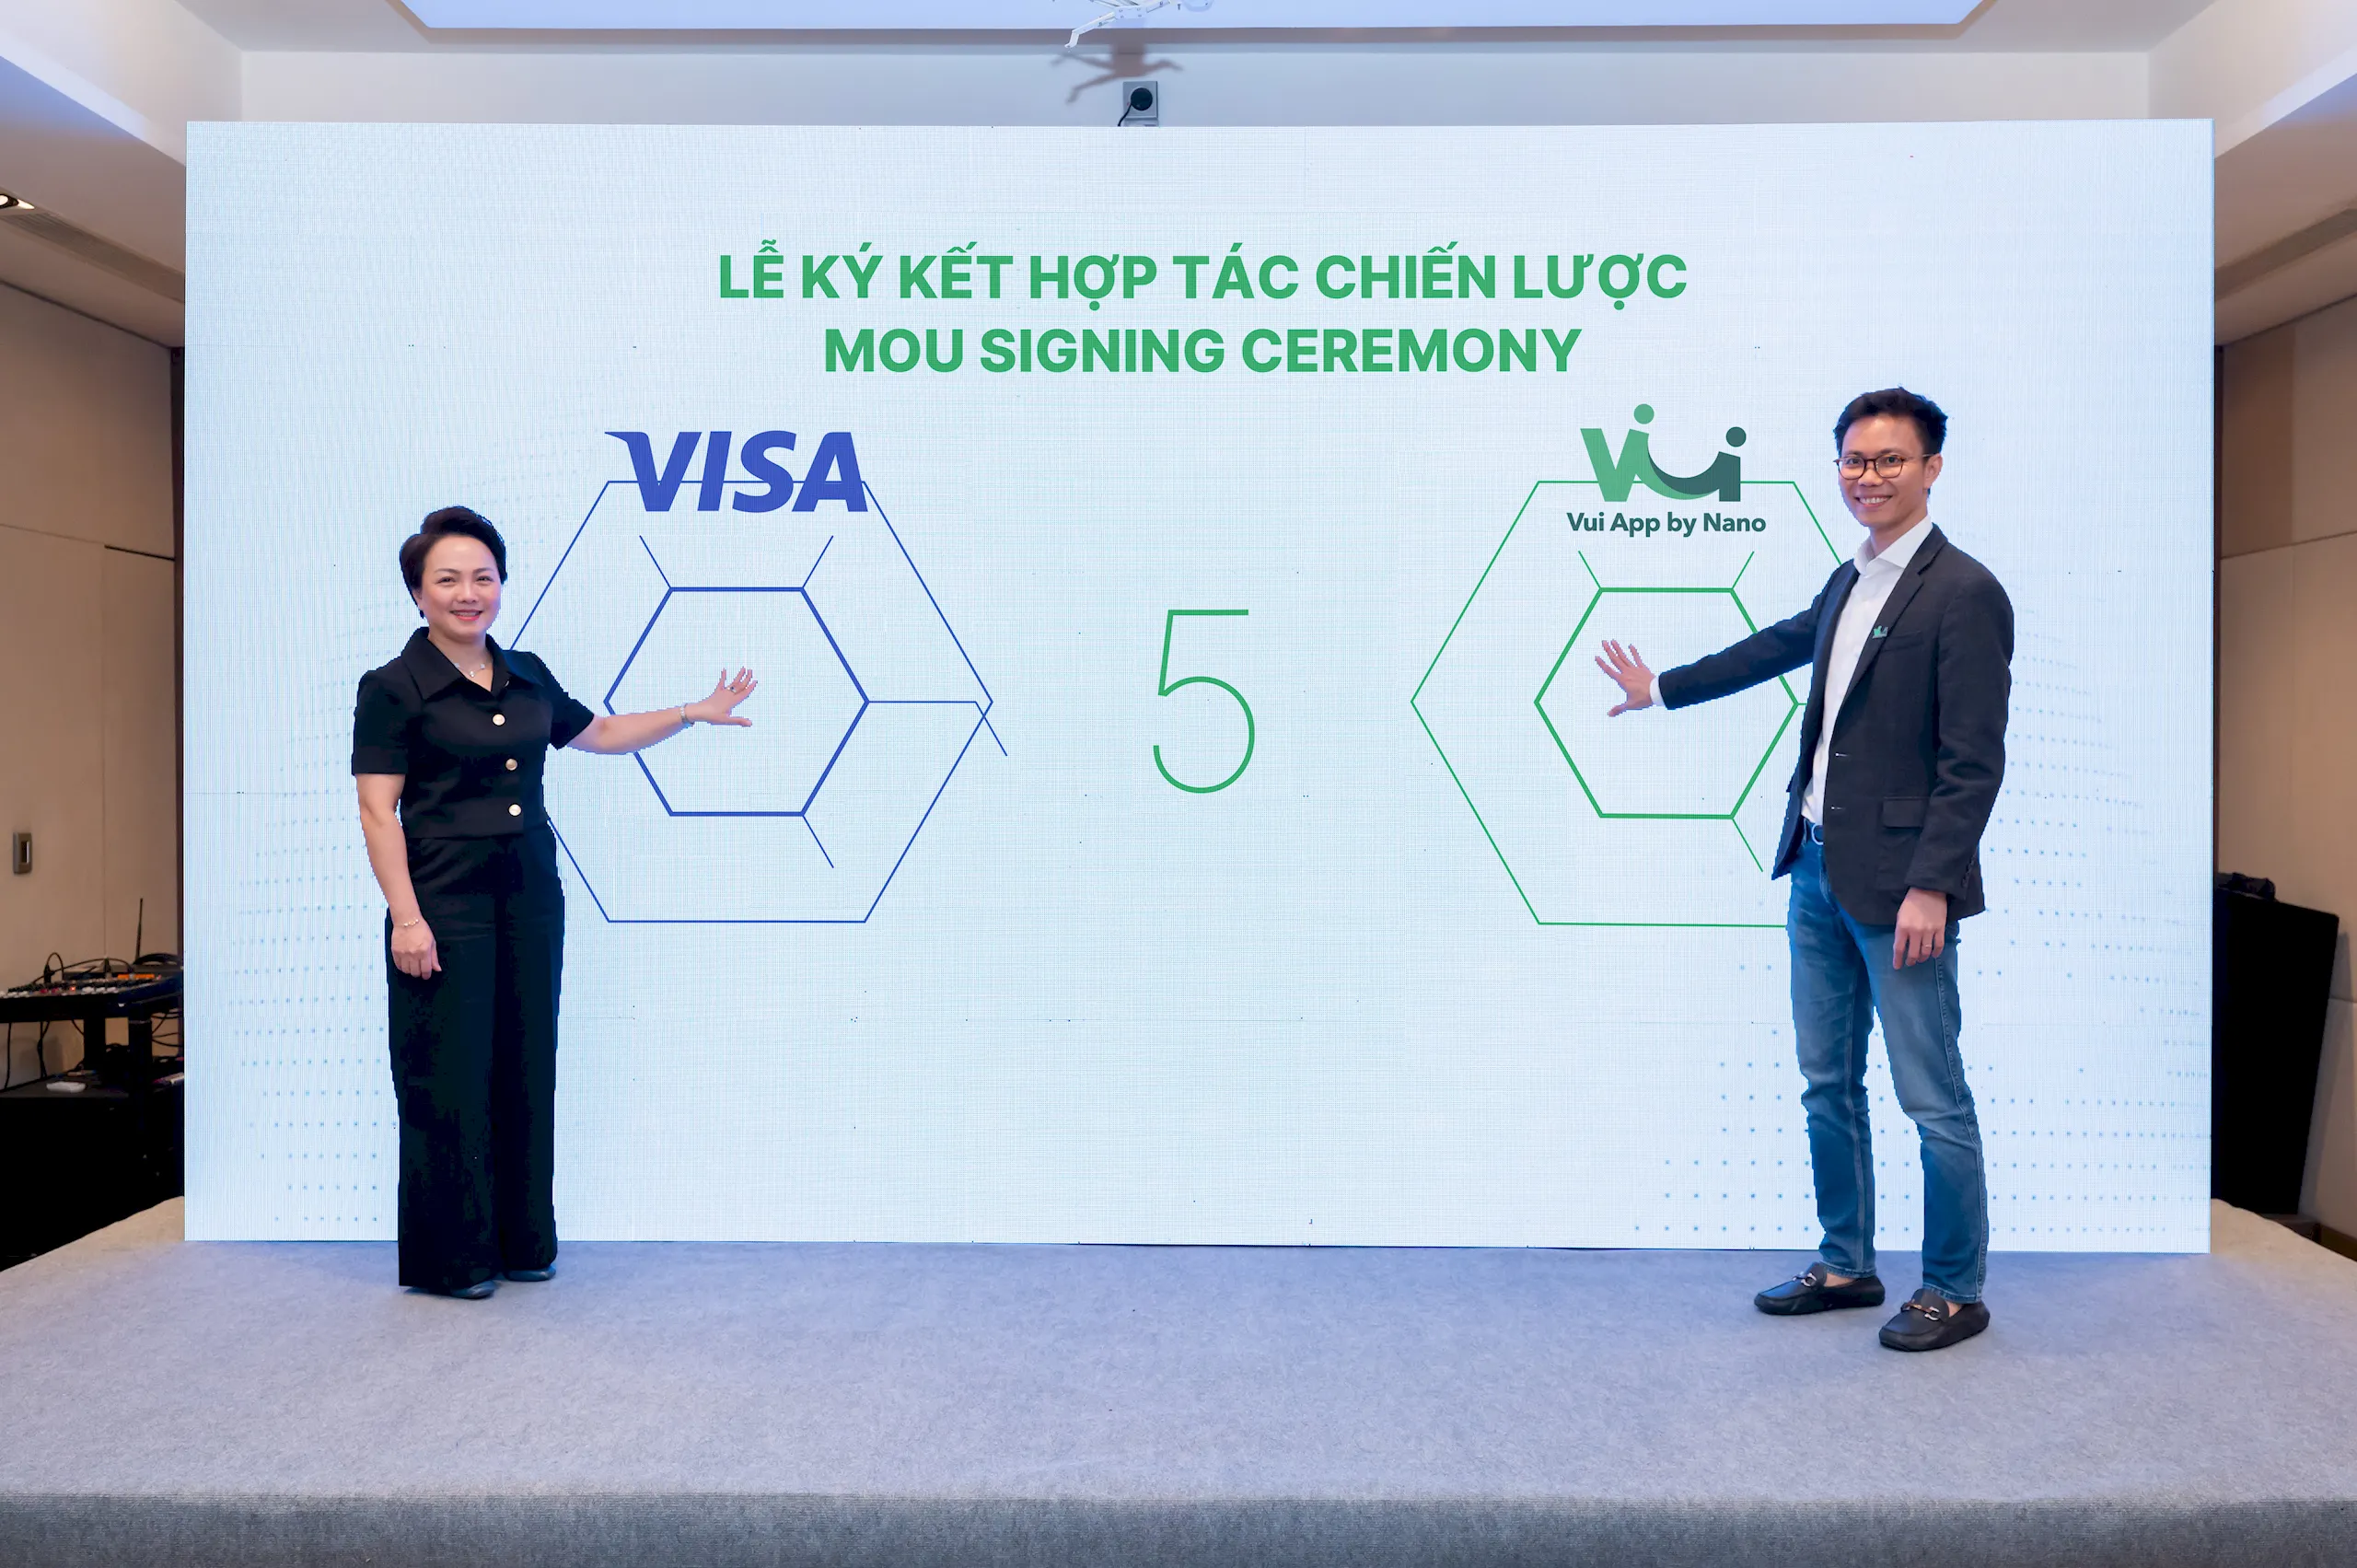 Visa hợp tác cùng Vui App thúc đẩy sáng kiến Lương Linh Hoạt tại Việt Nam